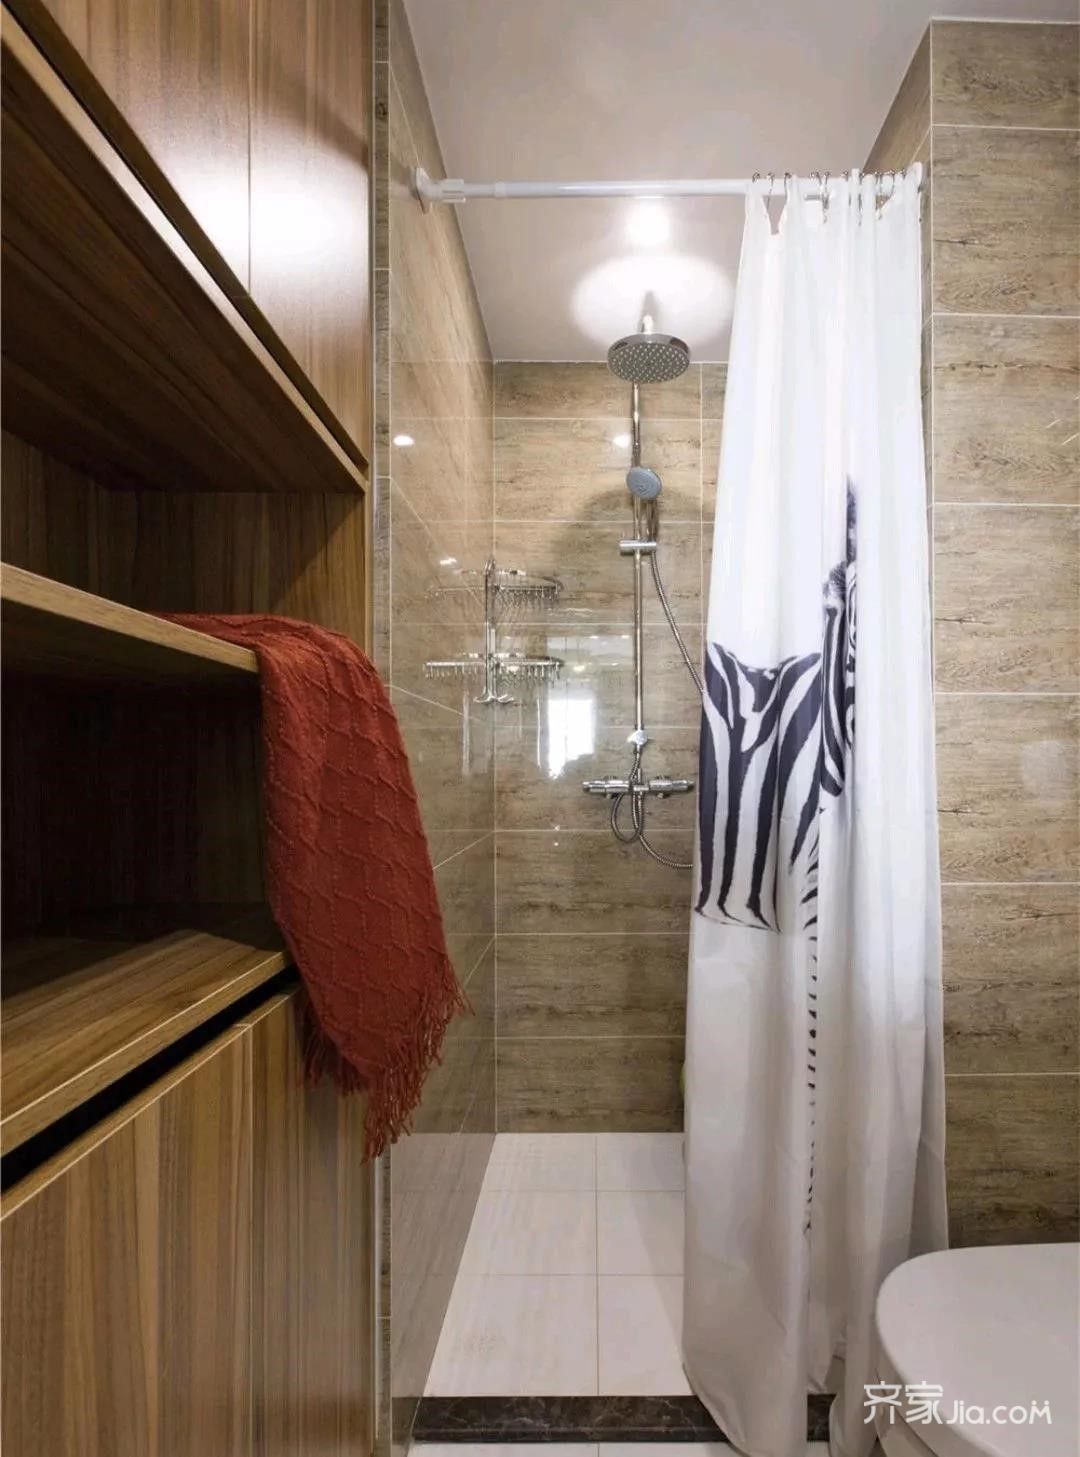 小小的卫生间,浴帘让干湿分离,保证了卫生间的干净整洁